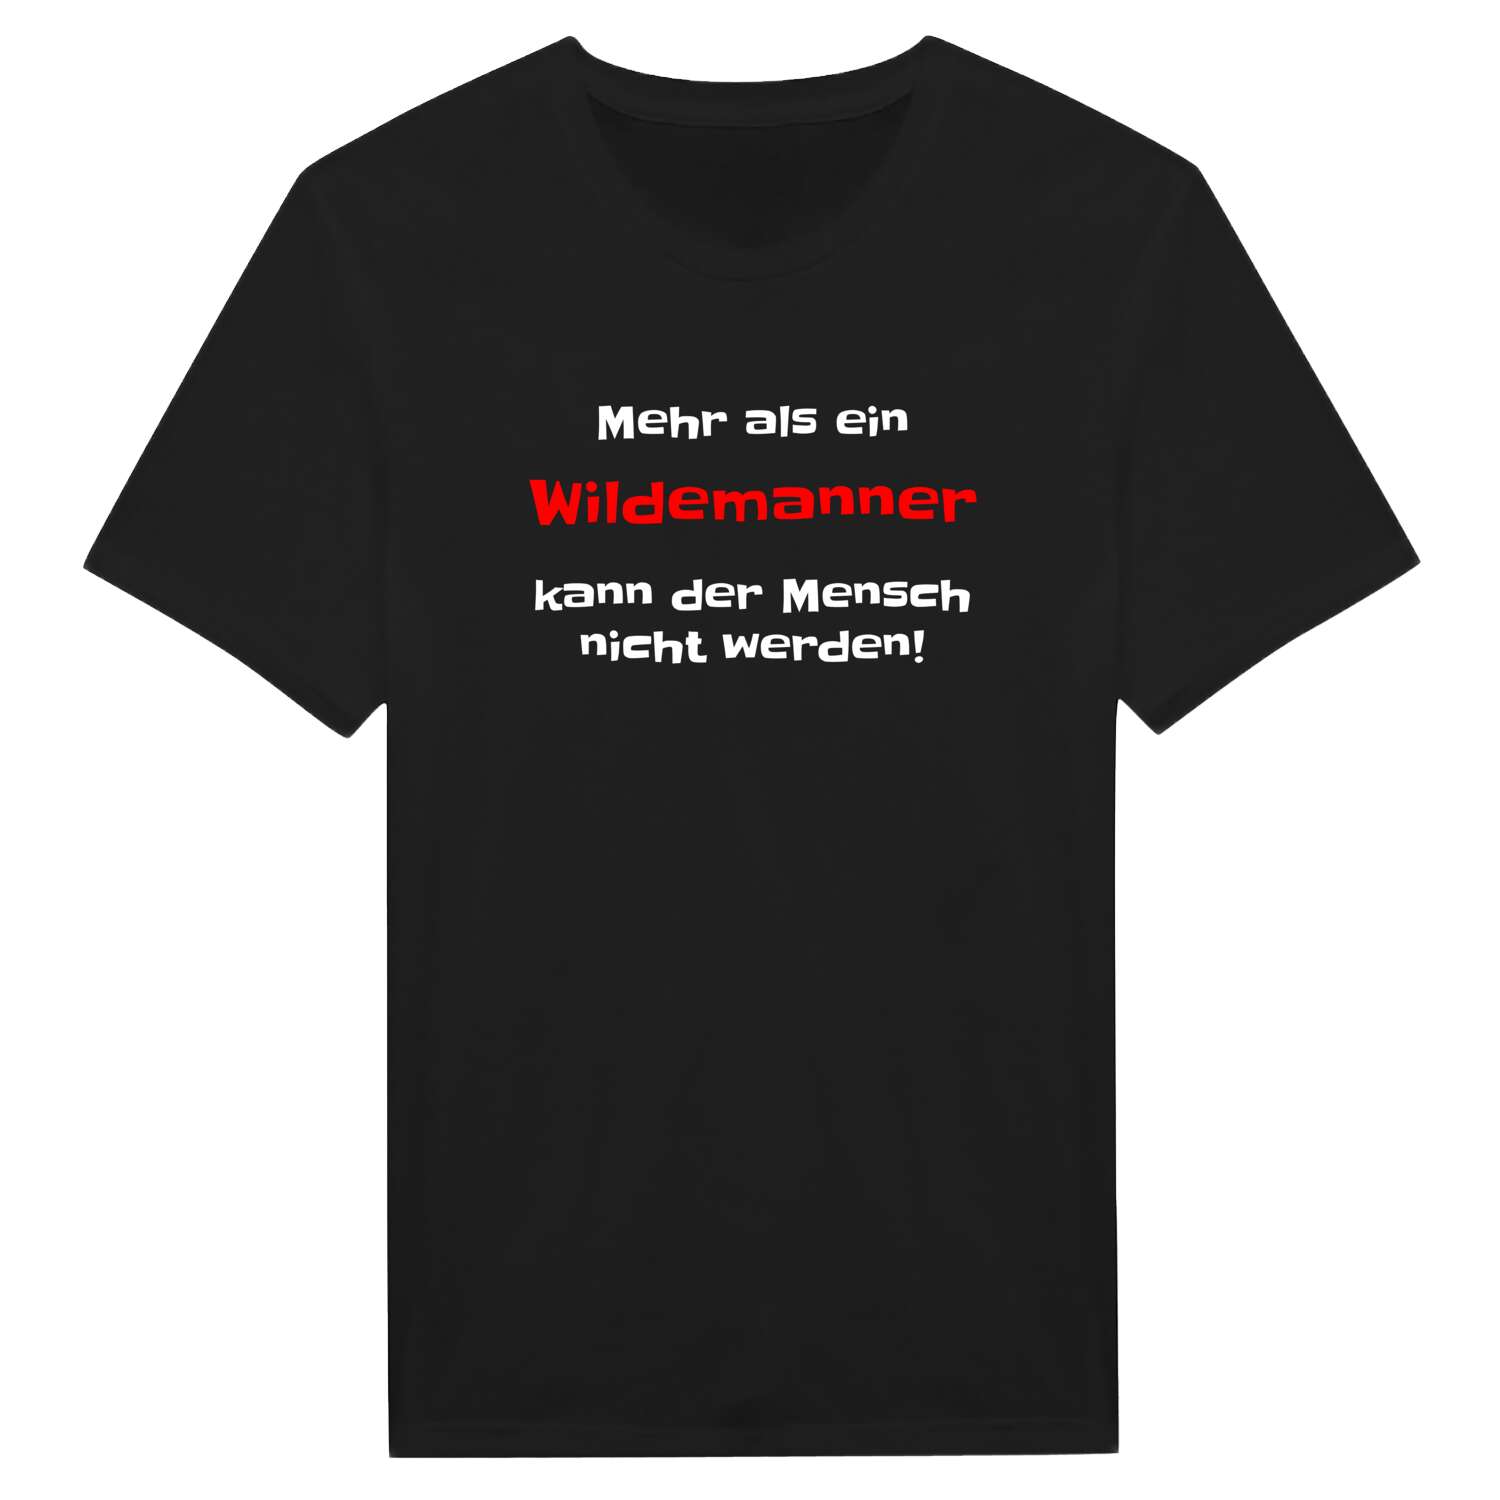 Wildemann T-Shirt »Mehr als ein«